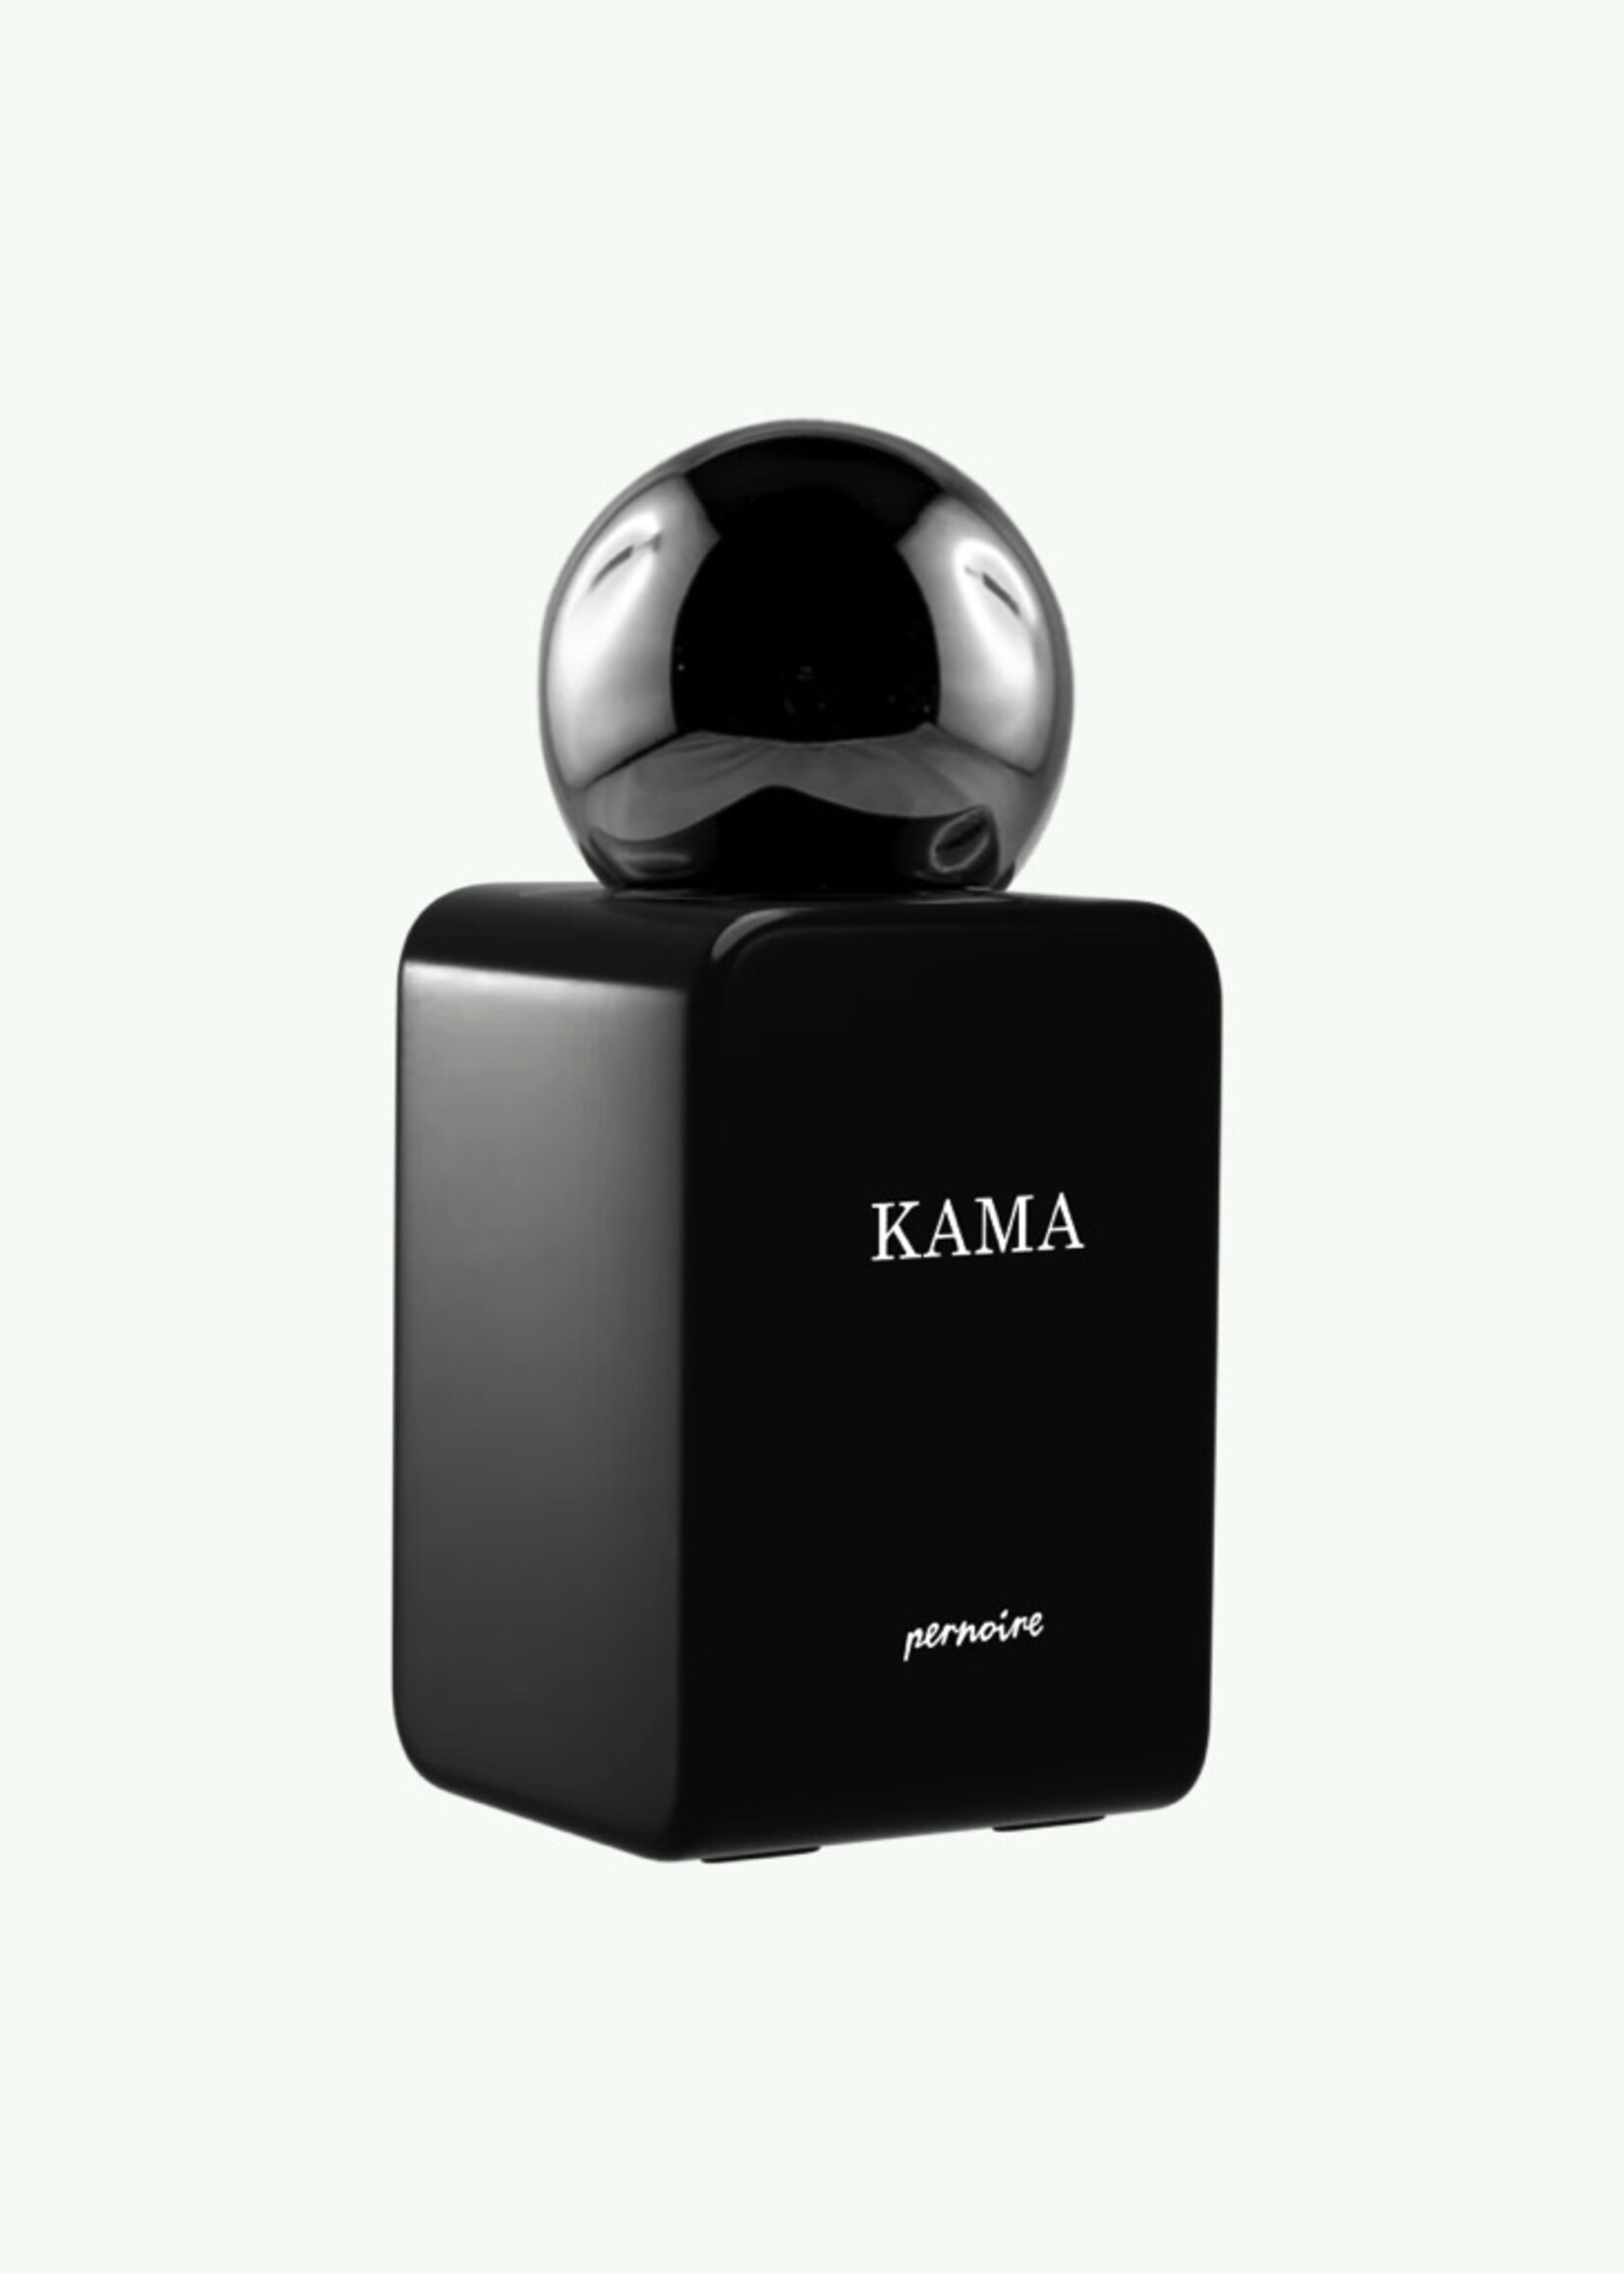 Pernoire Kama - Extrait de Parfum